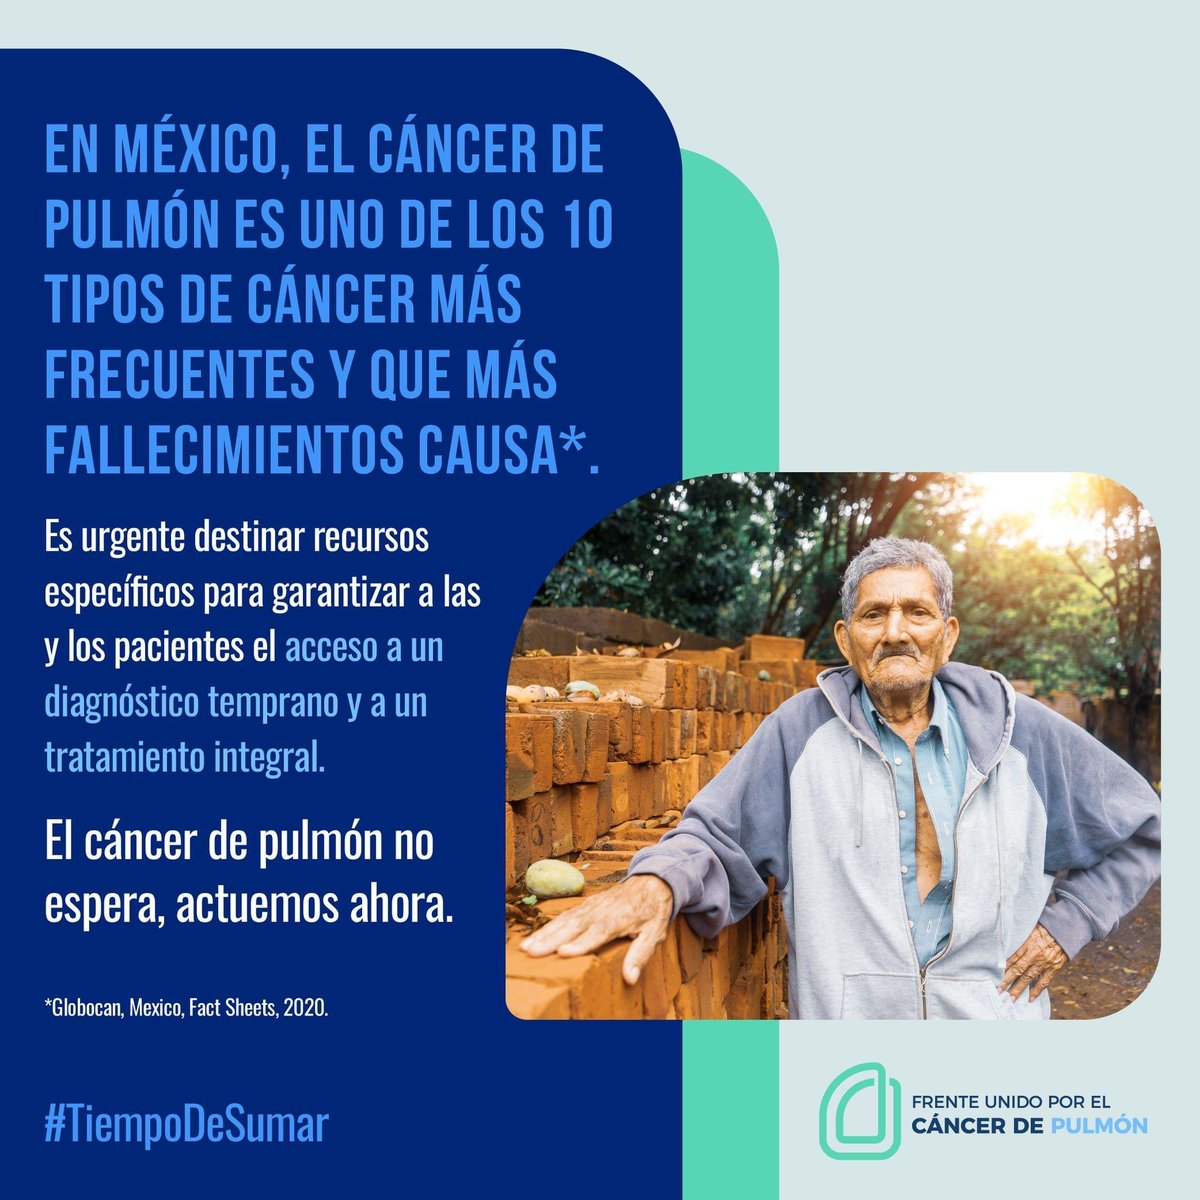 En 2020 se registraron 7 mil 100 fallecimientos por #CáncerDePulmón en México. Estas cifras nos llaman a sumar esfuerzos y destinar recursos específicos para garantizar a las y los pacientes el acceso a tratamiento integral y diagnóstico oportuno. ¡El cáncer de pulmón no espera!